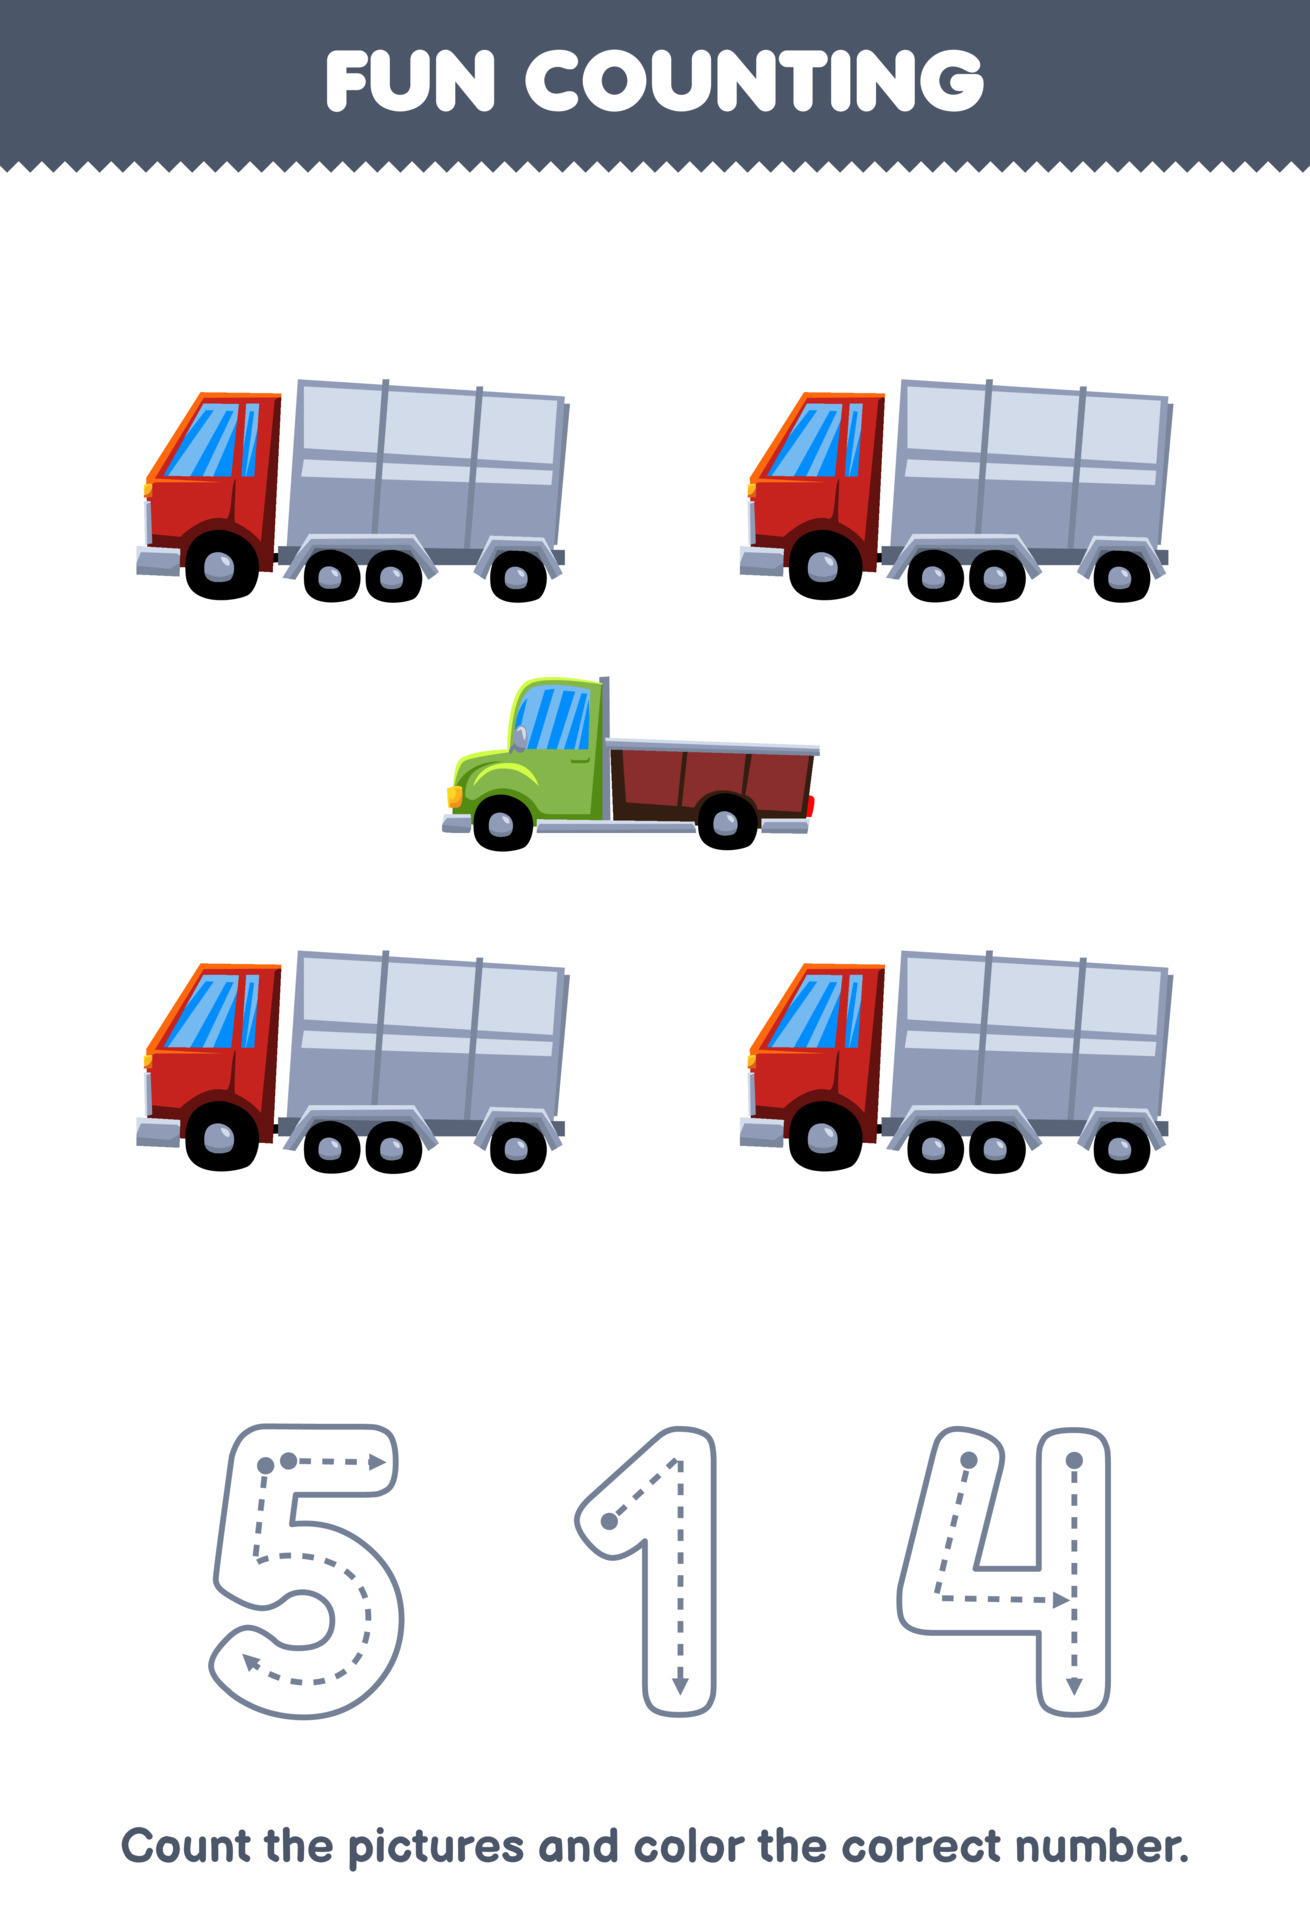 Caminhão : Desenhos para colorir, Jogos gratuitos para crianças